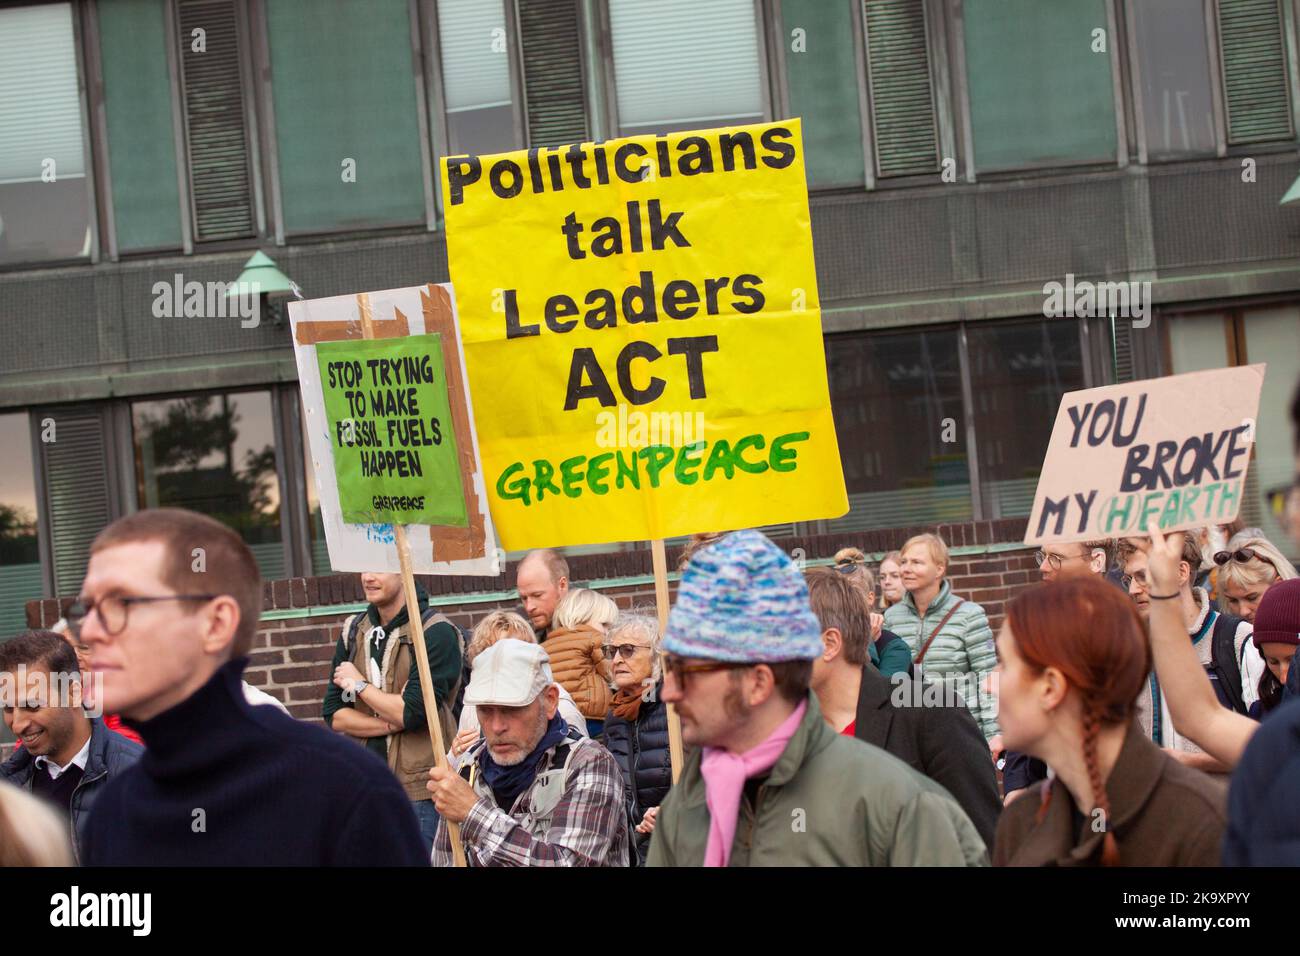 Un panneau lit les politiciens parlent de leaders ACT. La Marche pour le climat des peuples pour soutenir l'action sur le changement climatique mondial. Copenhague, Danemark - 30 octobre, 20 Banque D'Images